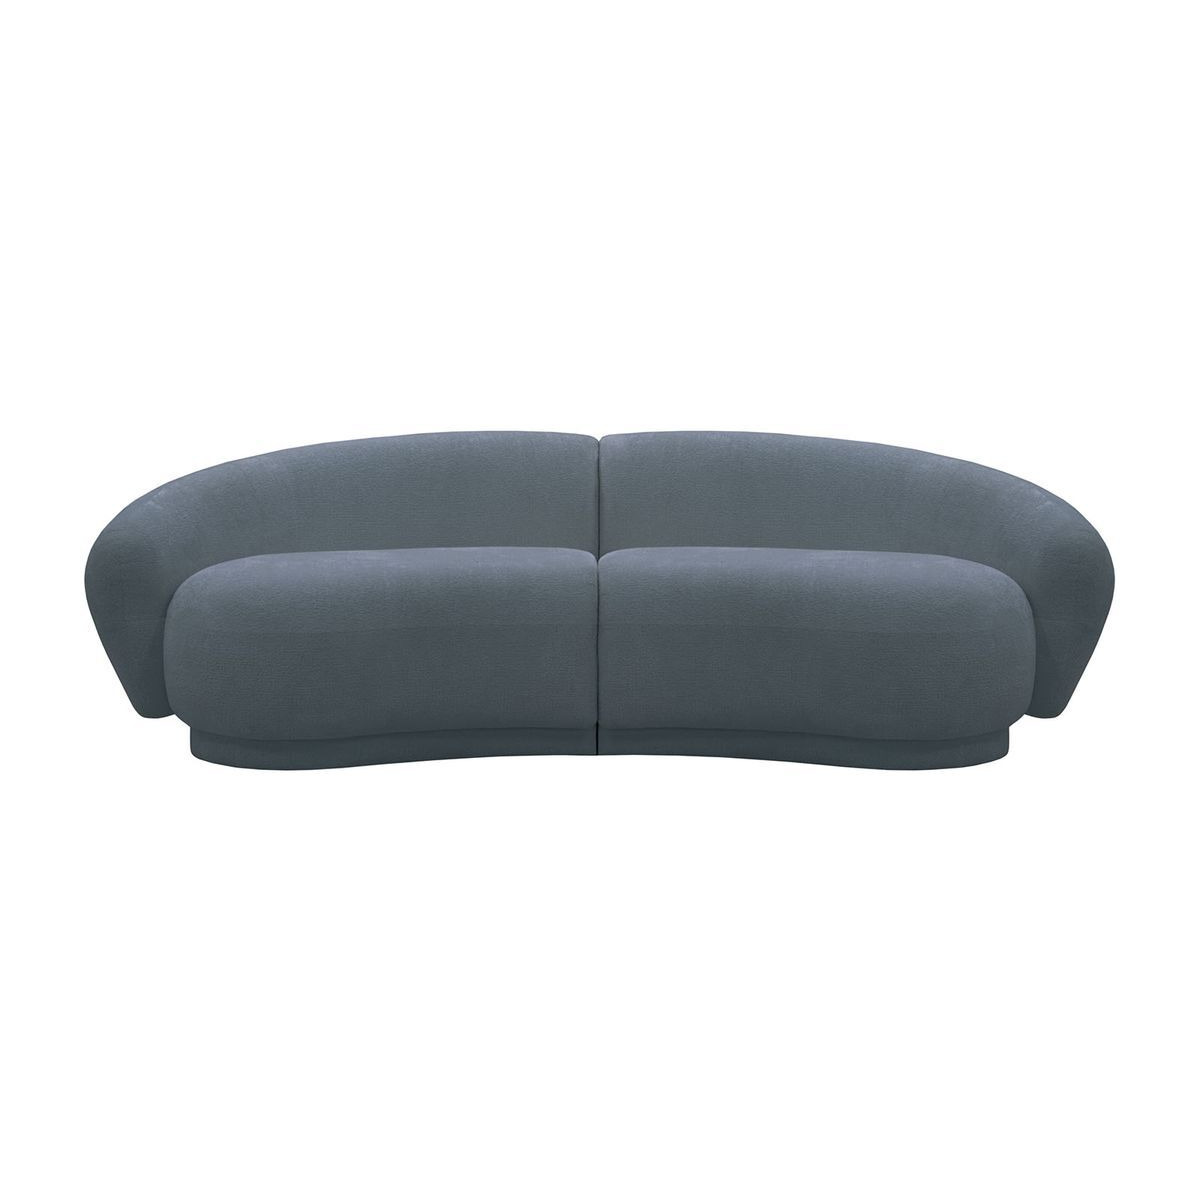 Bondi 3 Seater Sofa, boucle grey - image 1